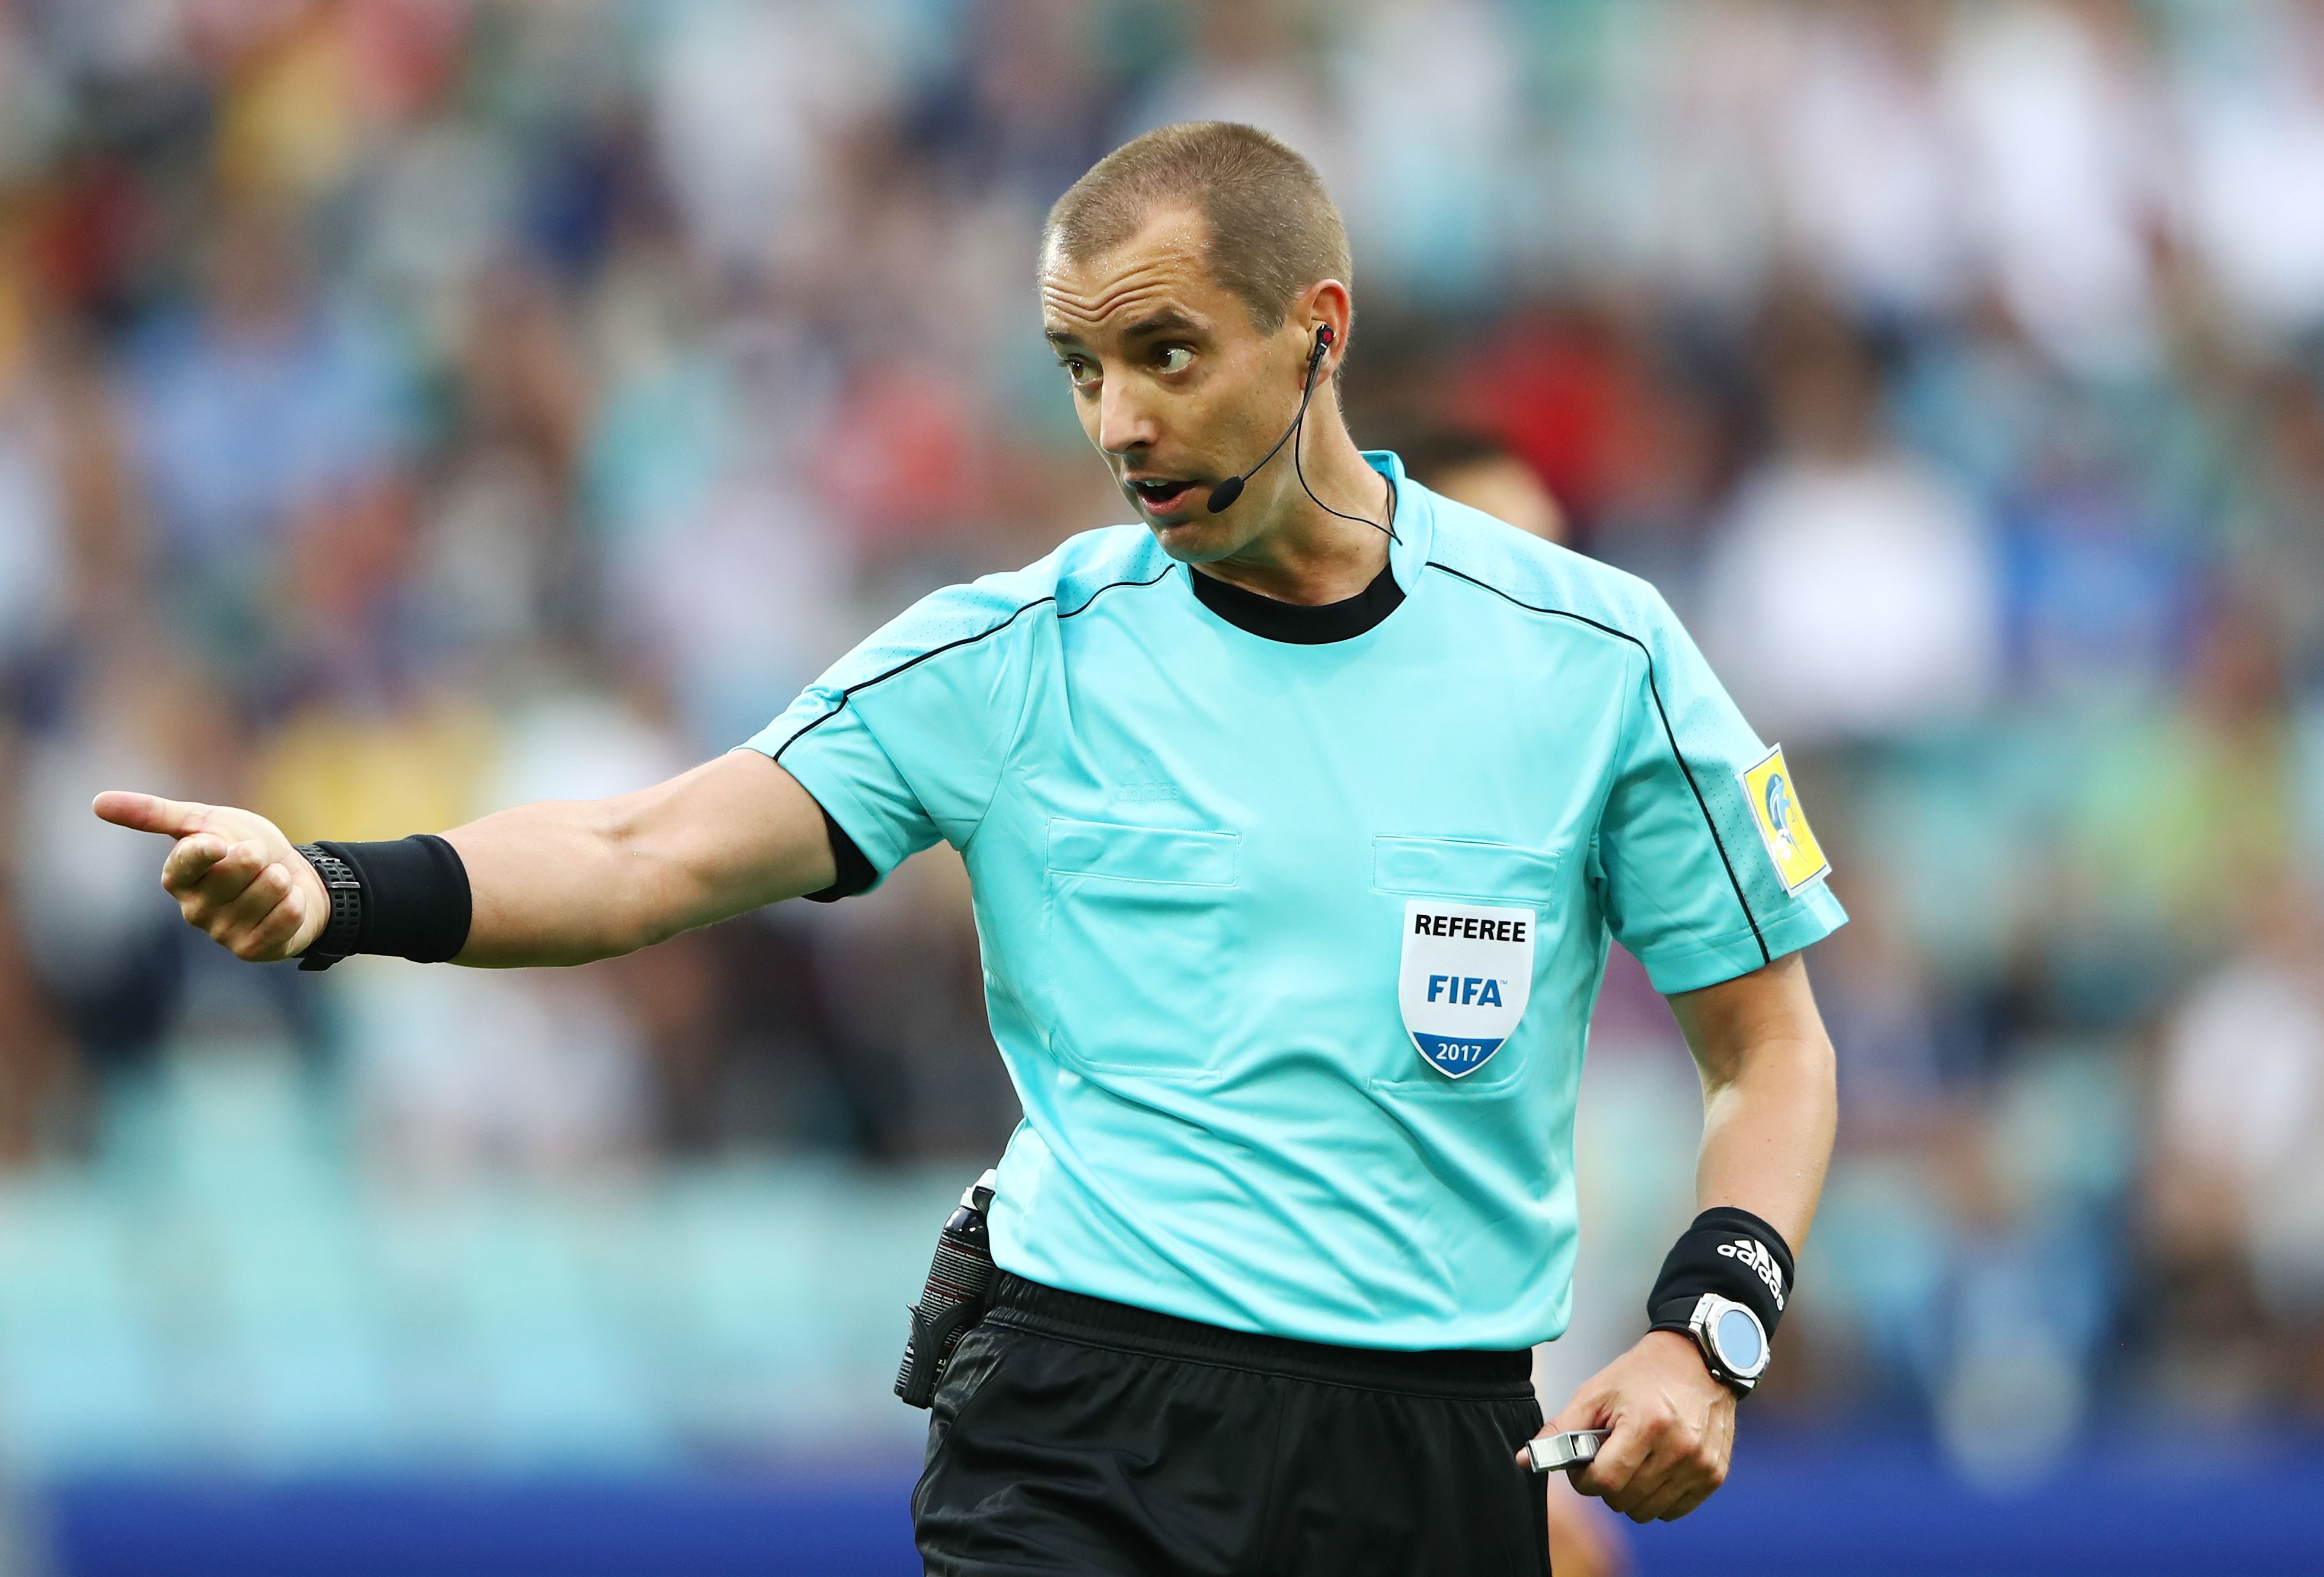 soccer referee fifa